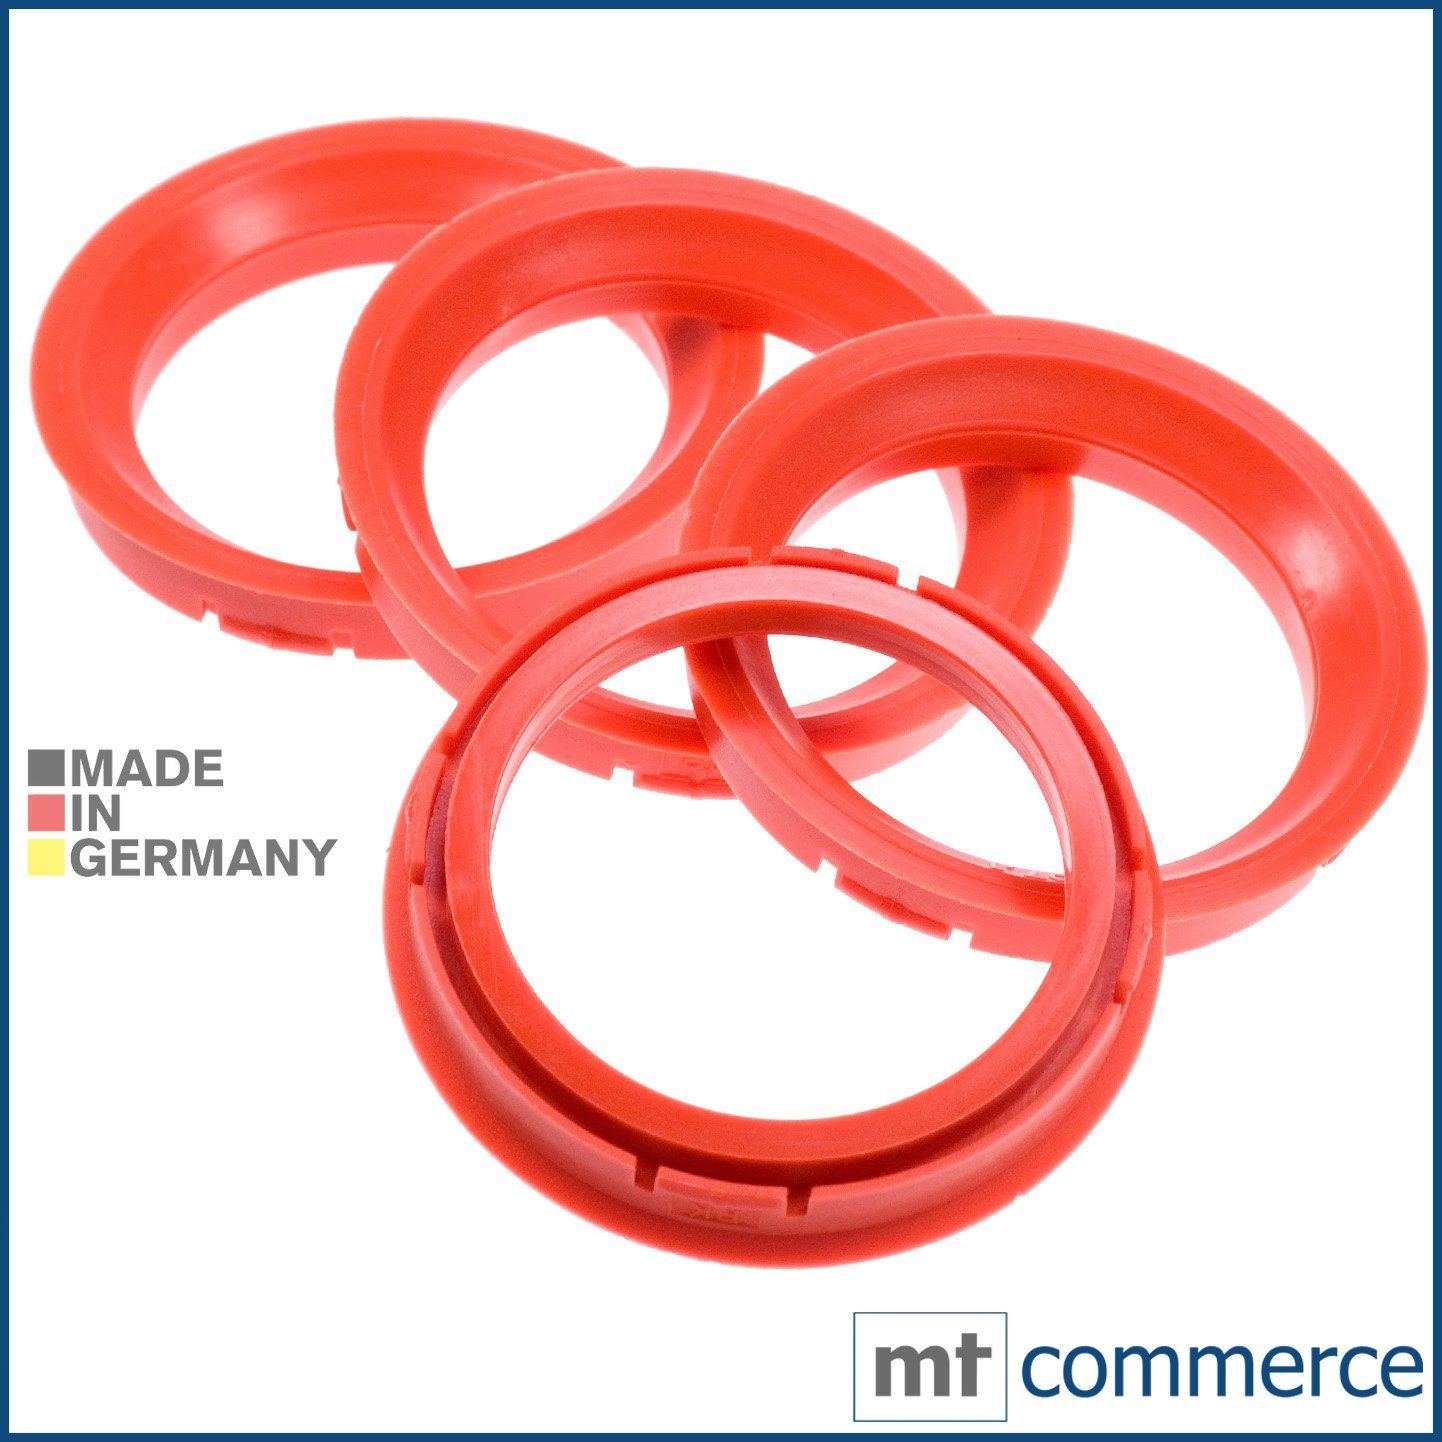 RKC Reifenstift 4X Zentrierringe rot Felgen Ringe Made in Germany, Maße: 73,0 x 57,1 mm